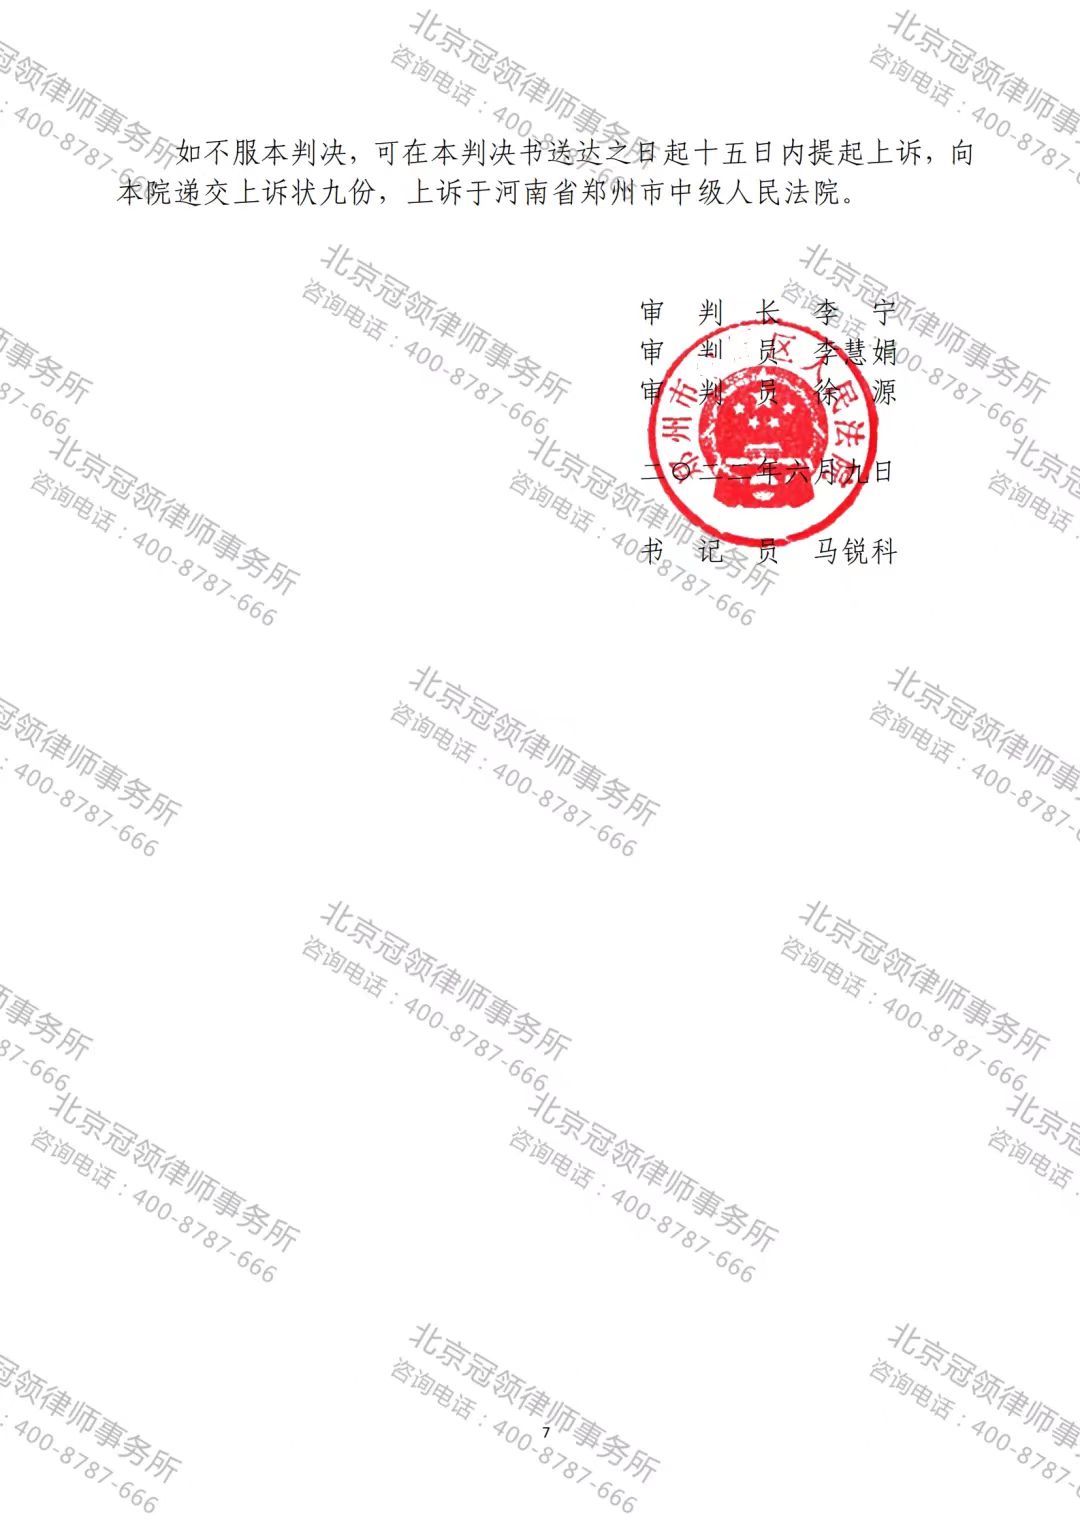 冠领律师代理的河南郑州确认拆违违法案胜诉-图3